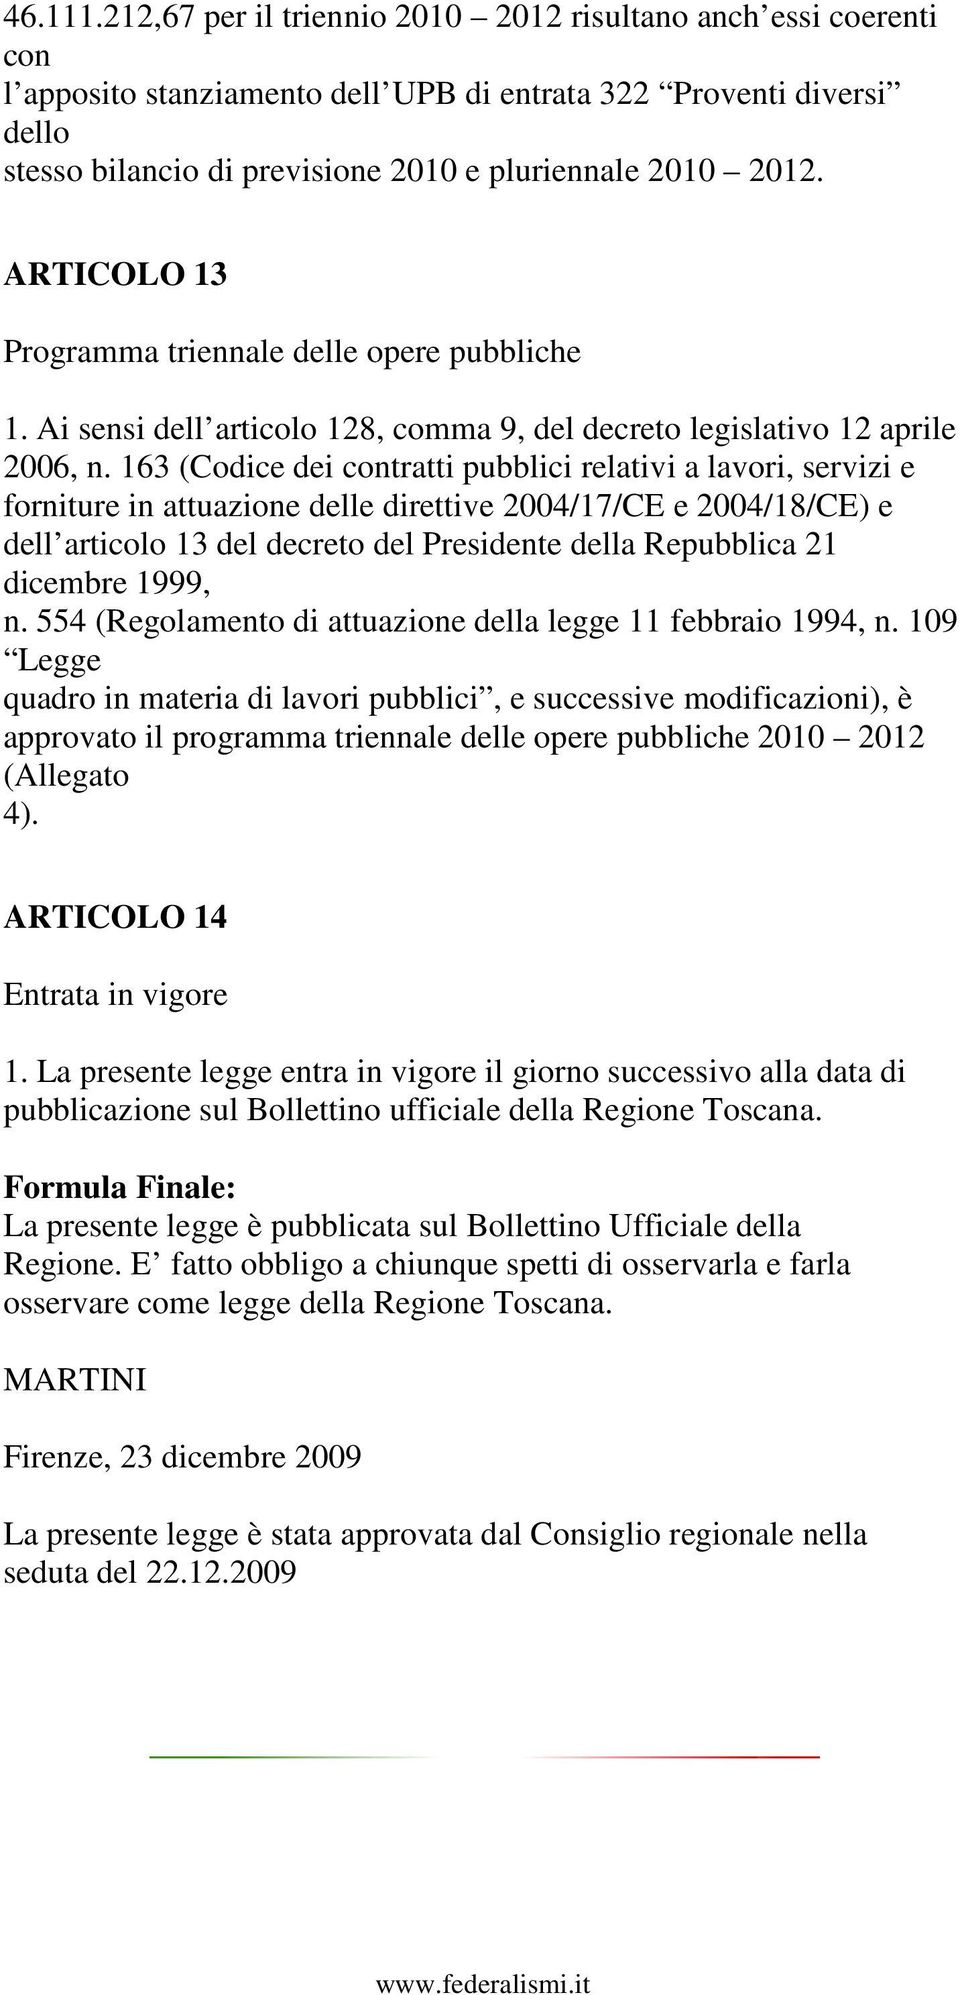 ARTICOLO 13 Programma triennale delle opere pubbliche 1. Ai sensi dell articolo 128, comma 9, del decreto legislativo 12 aprile 2006, n.